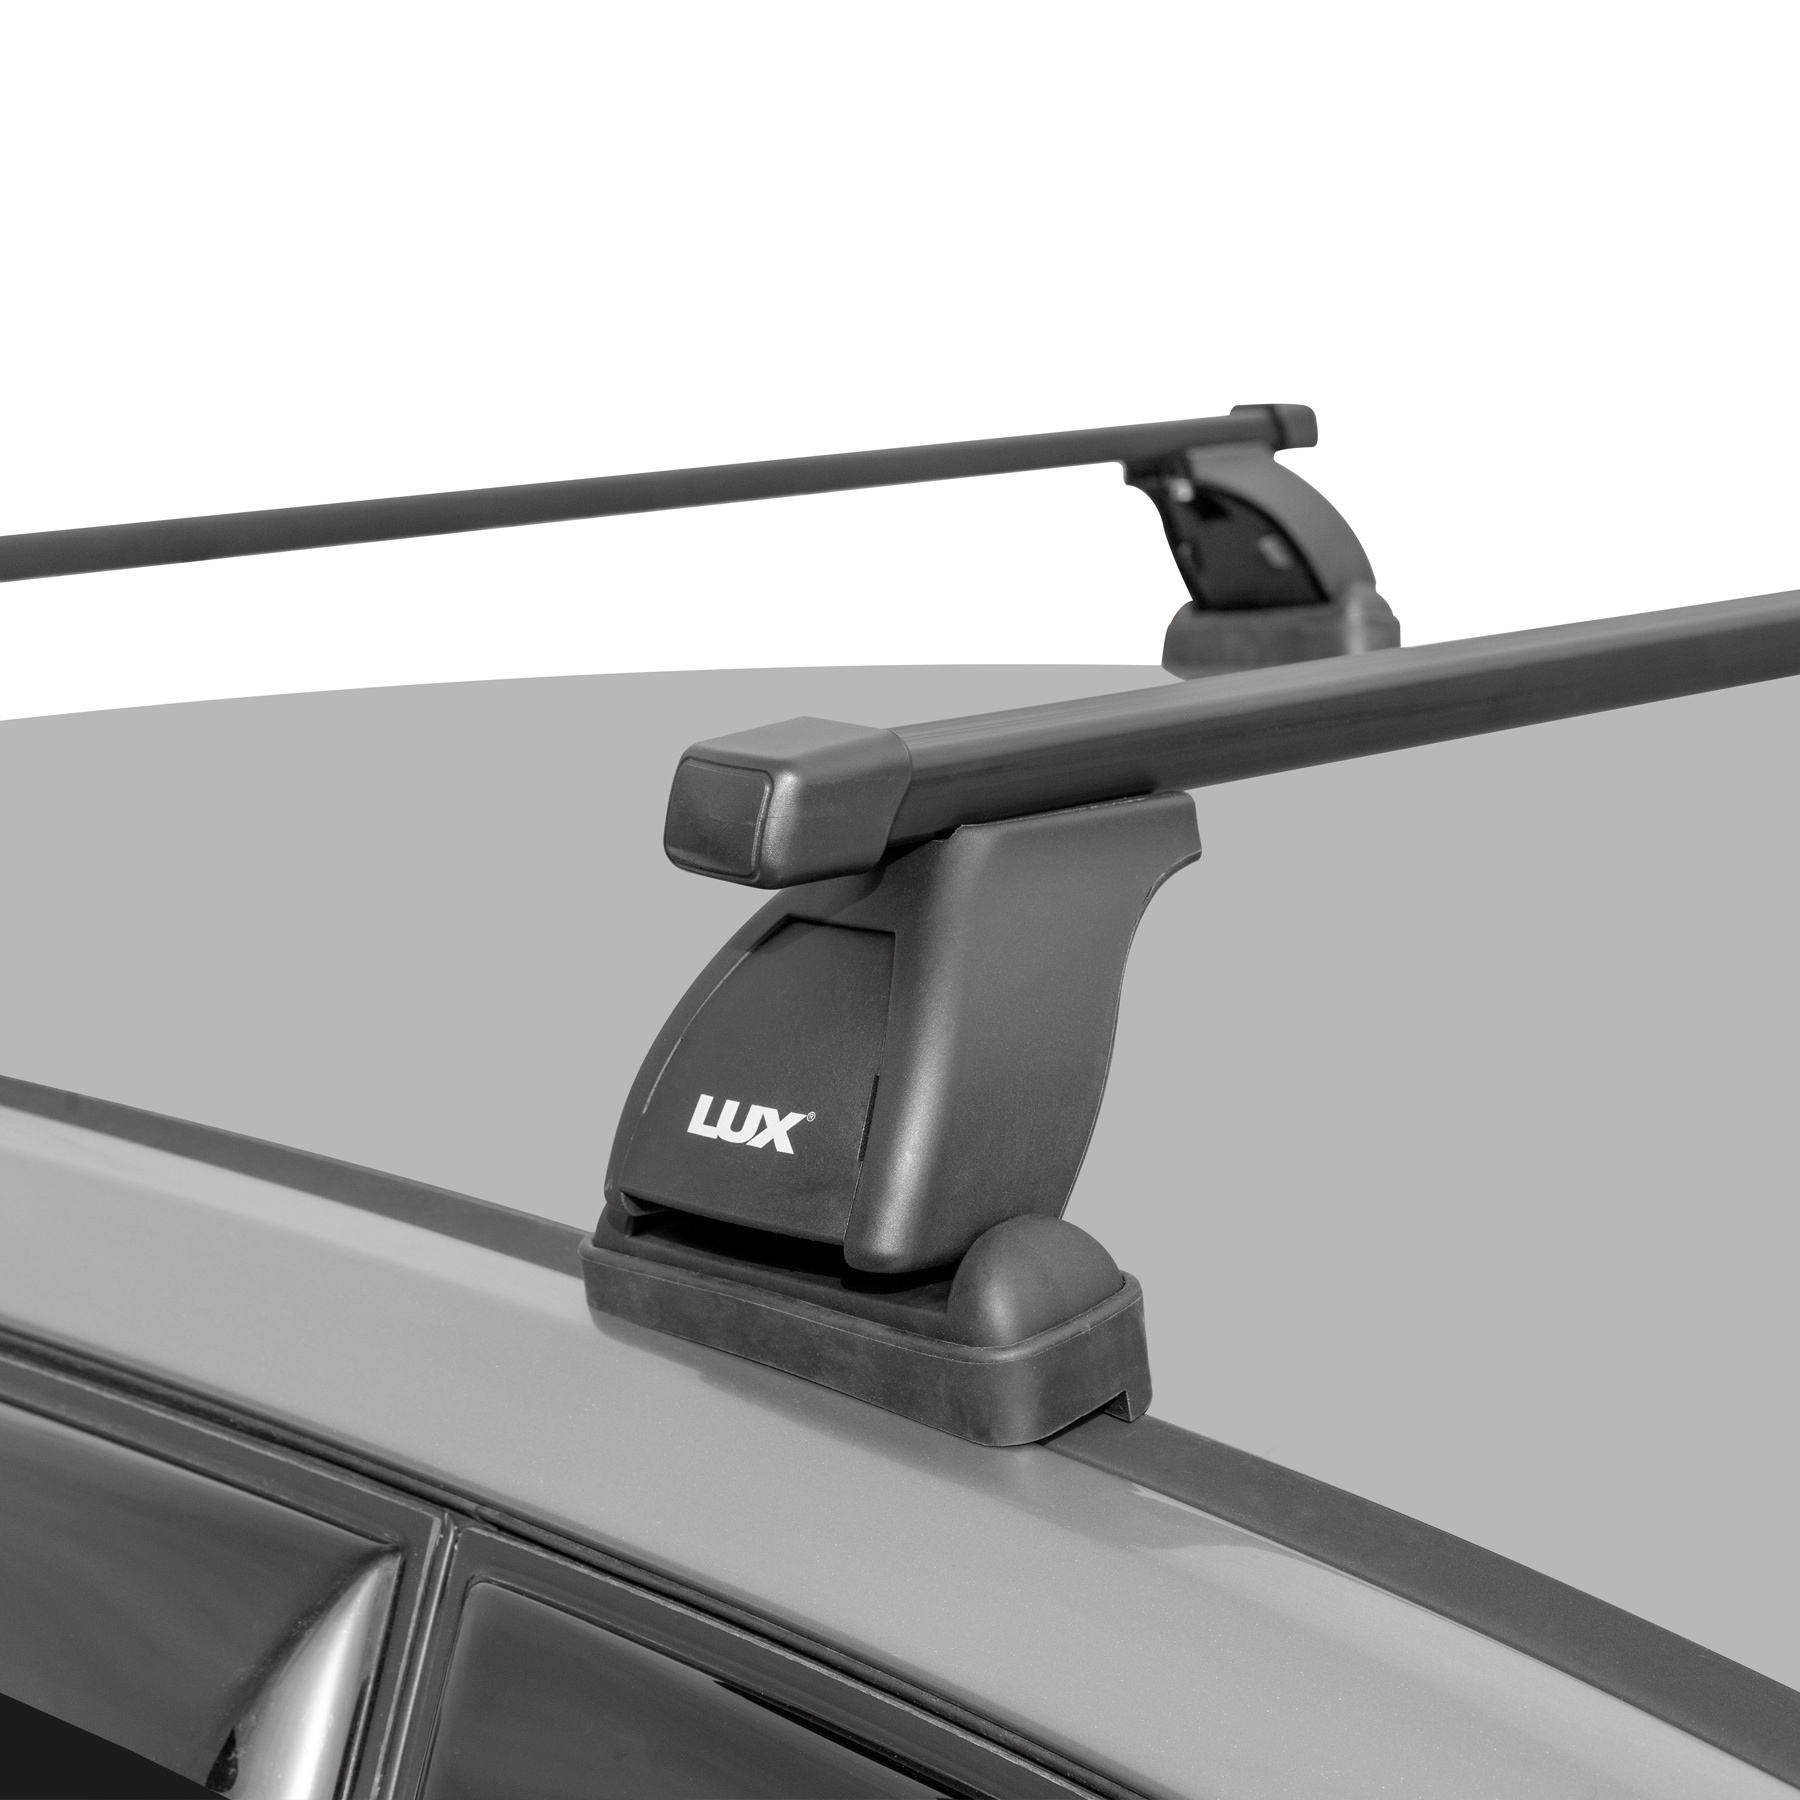 Багажники на крышу автомобиля Шевроле Ланос (Chevrolet Lanos) – самые актуальные вопросы: